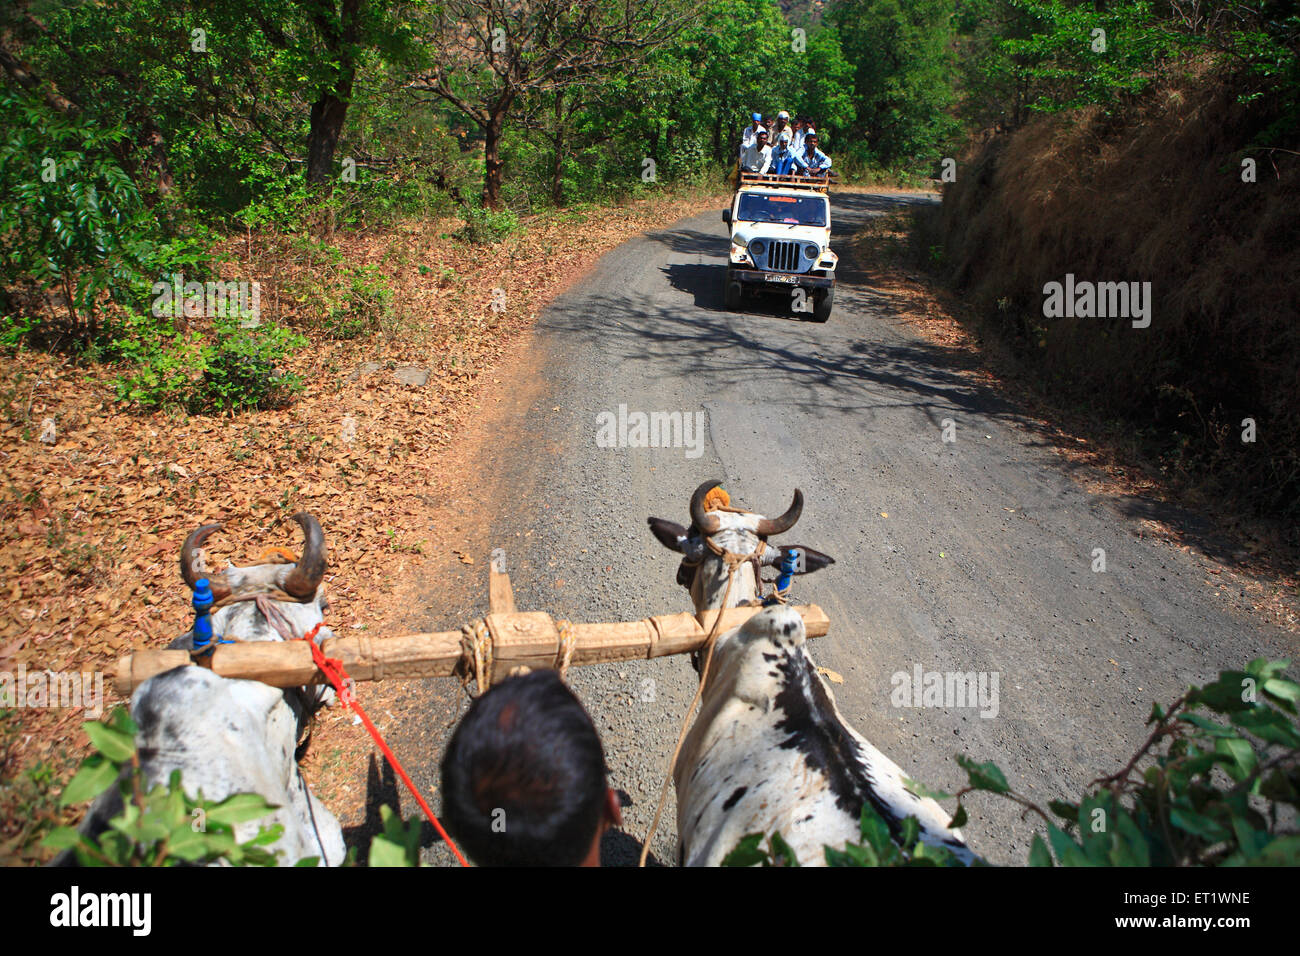 Agriculteur sur charrette et les voyageurs sur le ramasseur jeep à Bhandardara Maharashtra Inde Asie Banque D'Images